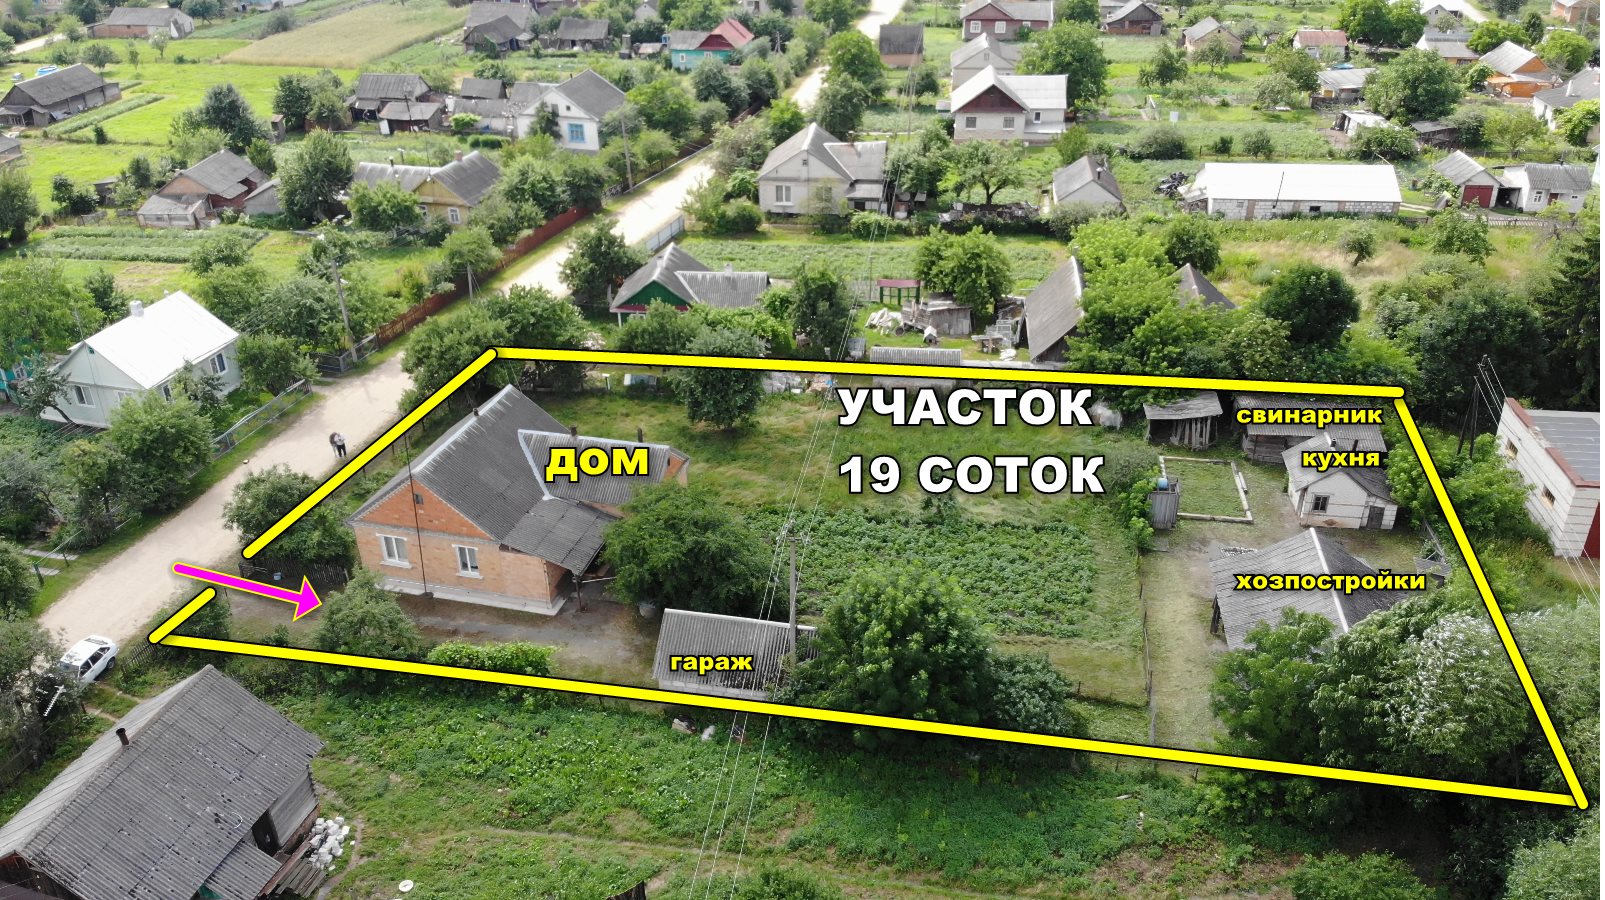 Продам дом в г.п. Антополь от Бреста 77км. от Минска 270 км. - фотография